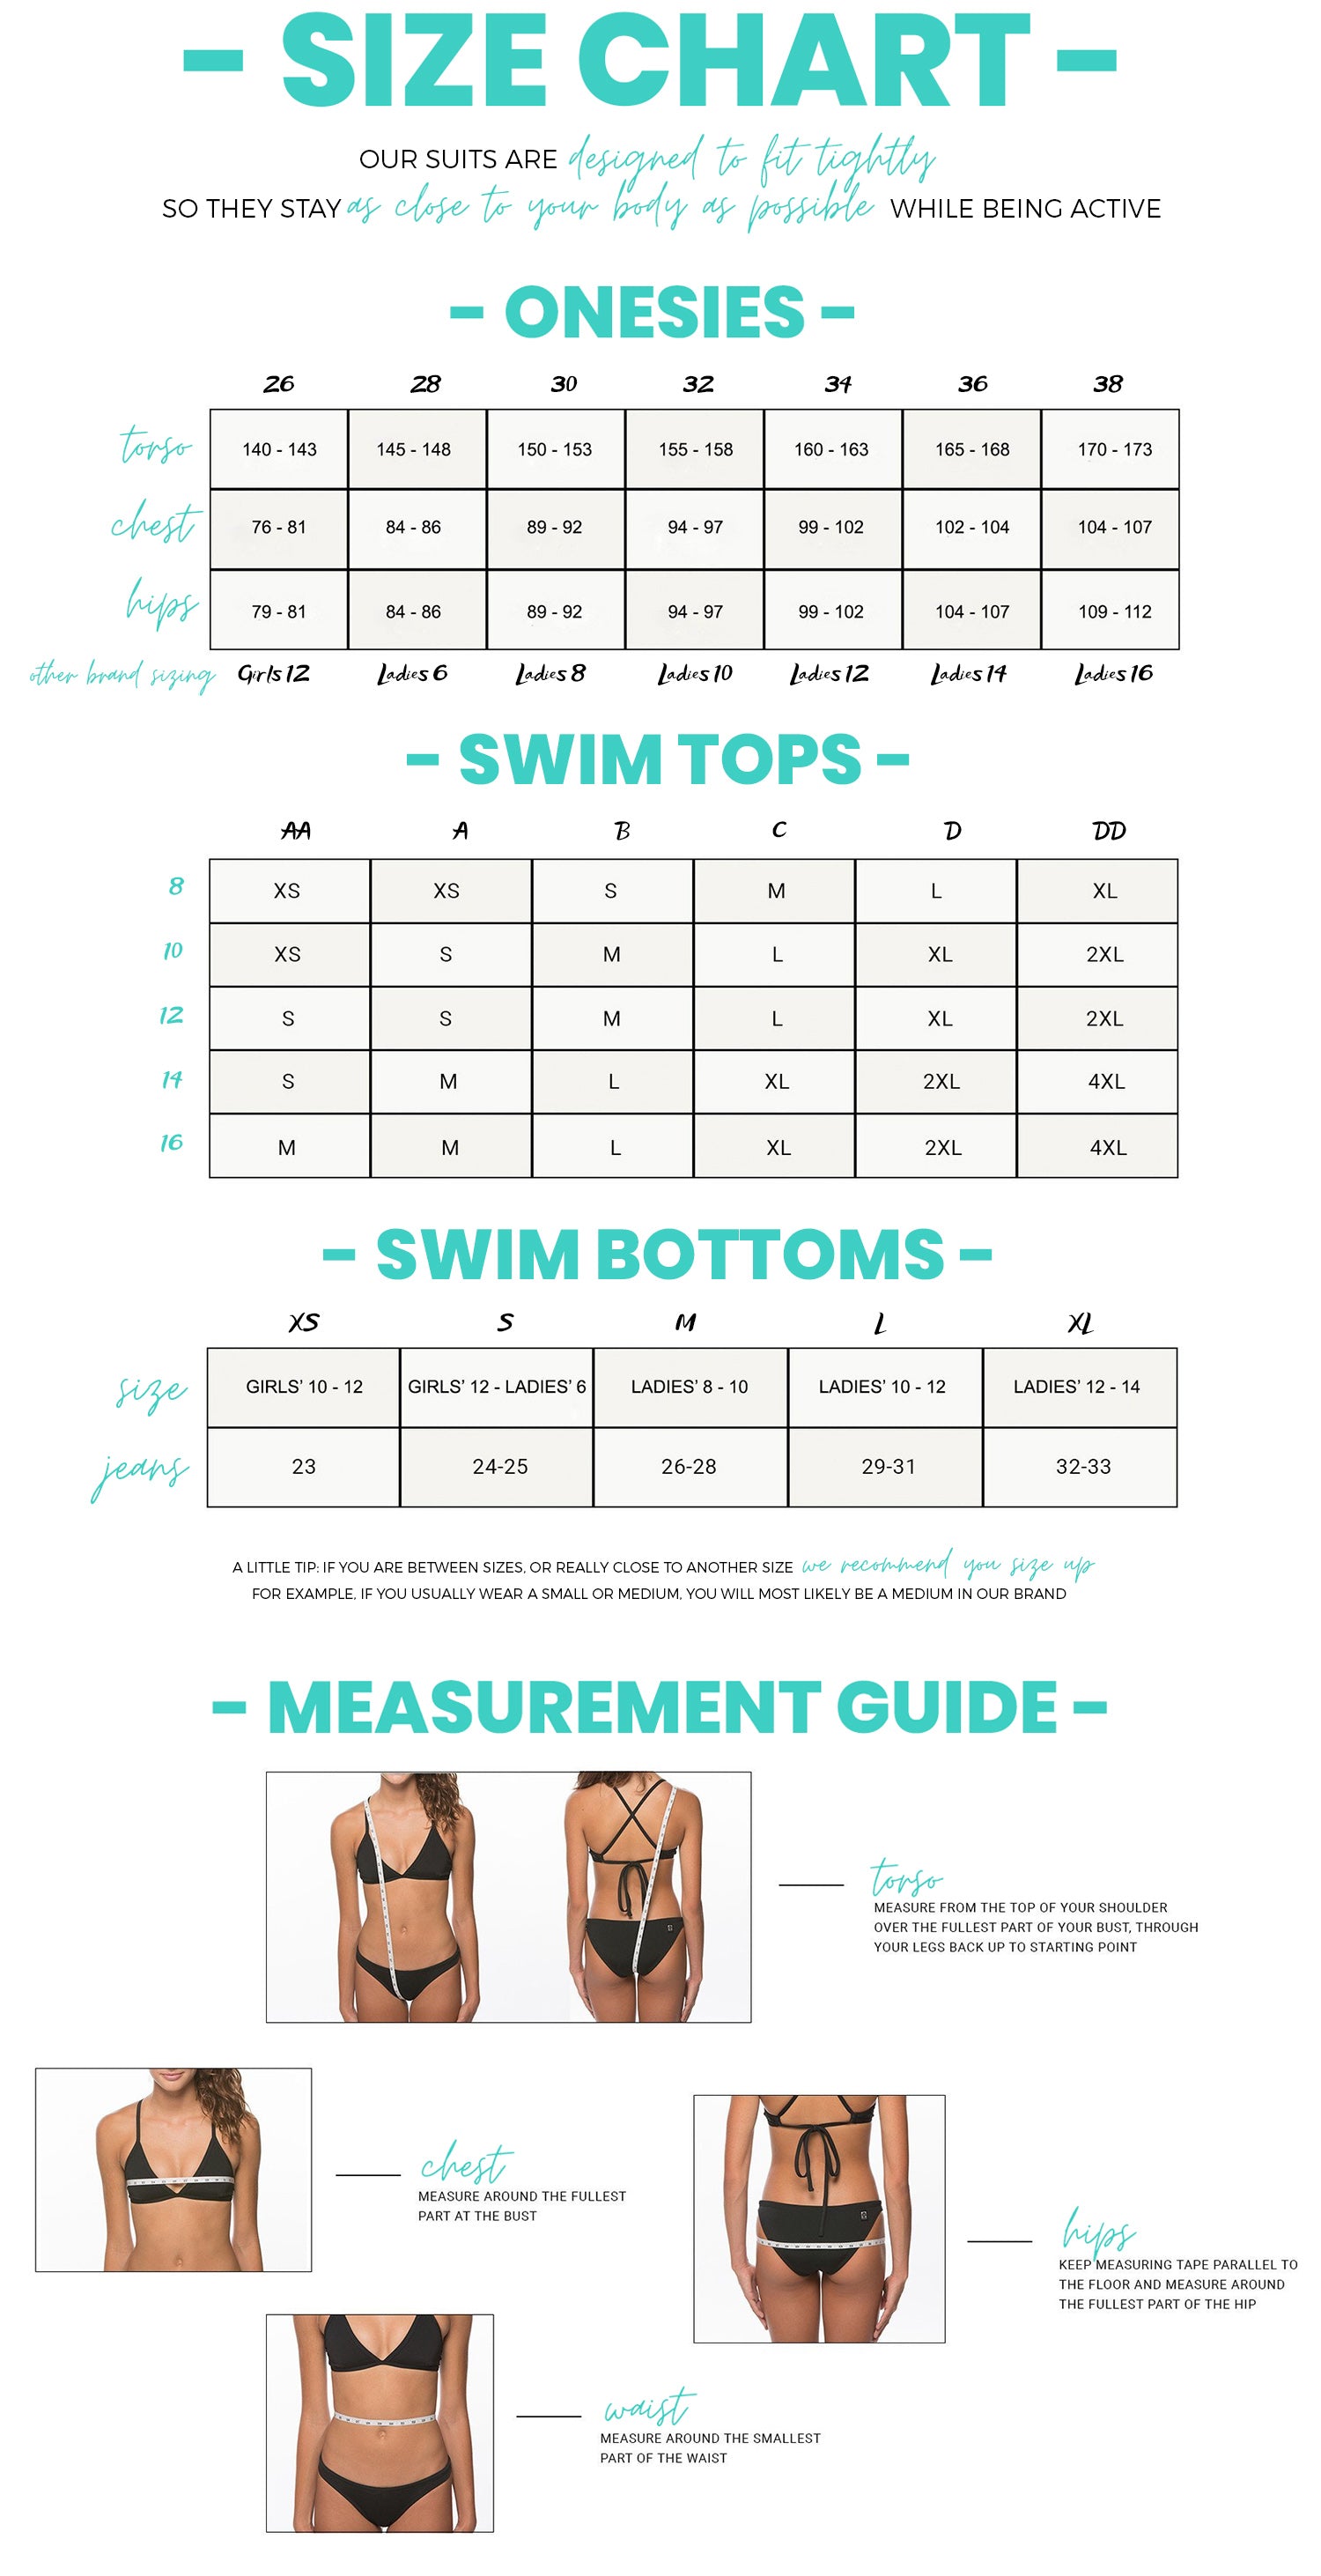 Simpson Bathing Suit Size Chart